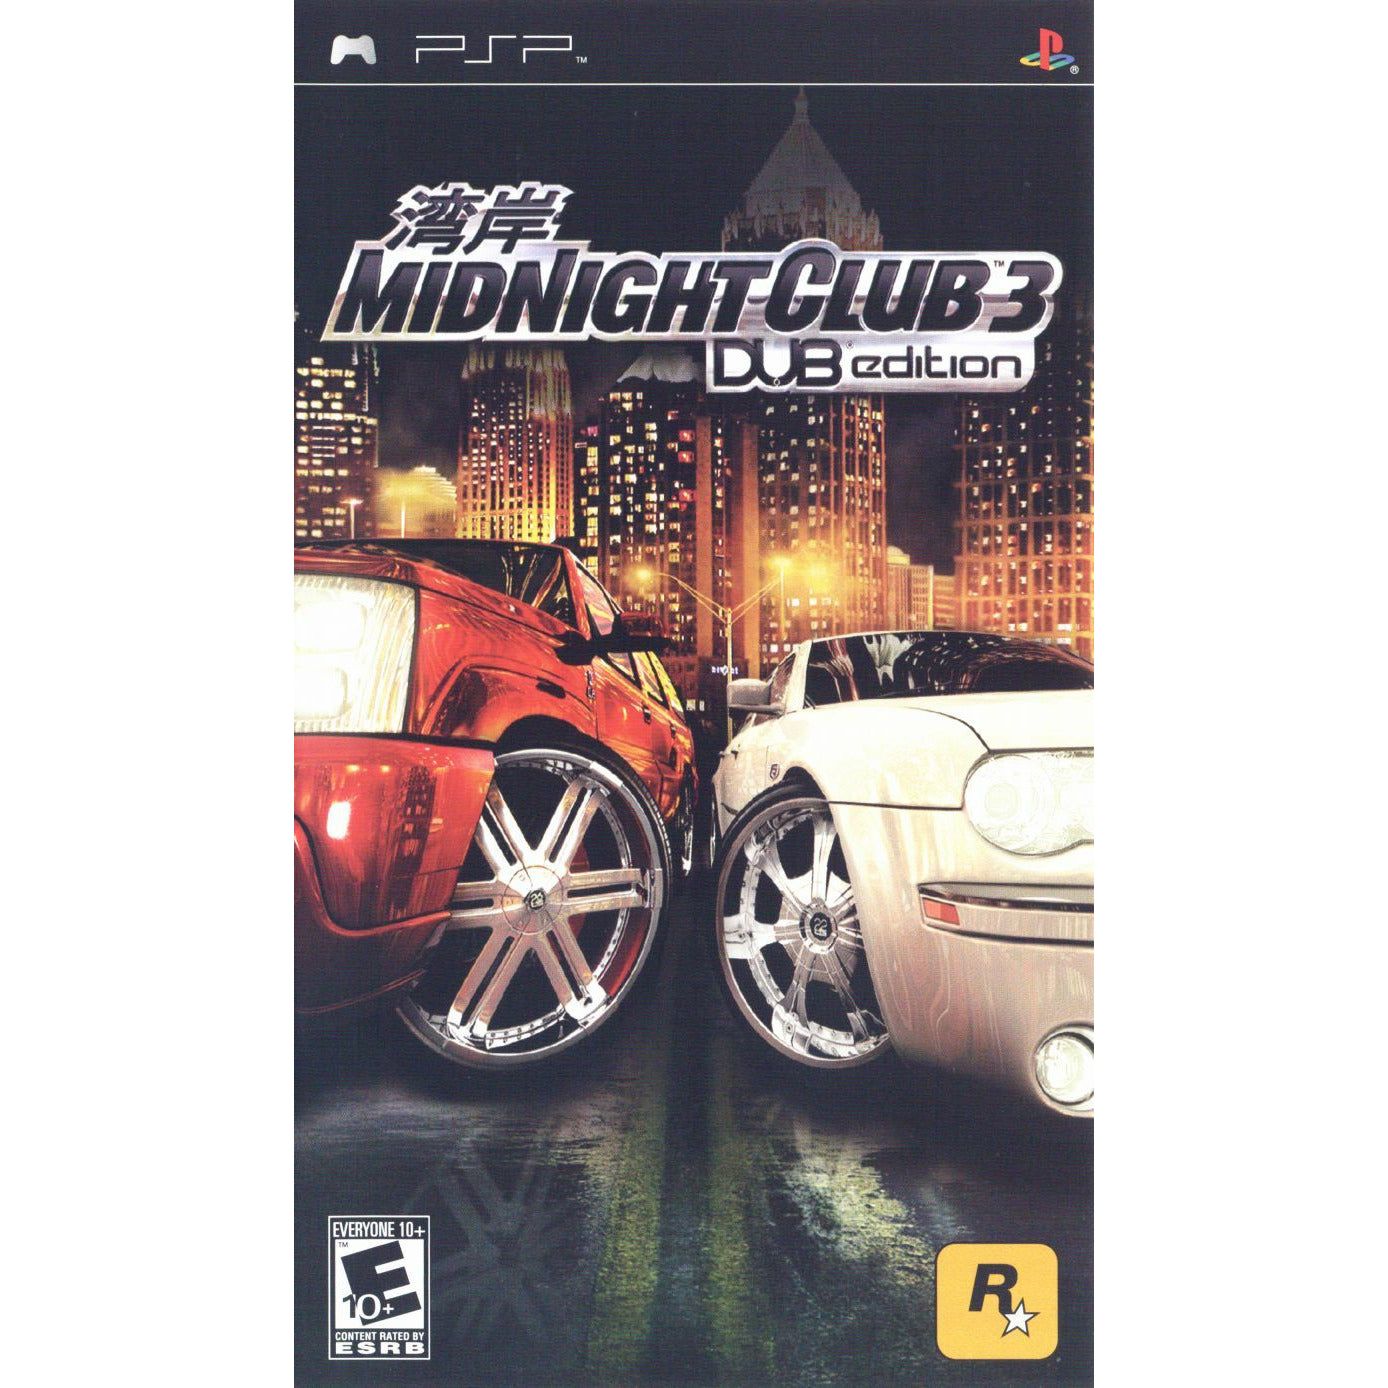 PSP - Midnight Club 3 Dub Edition (In Case)